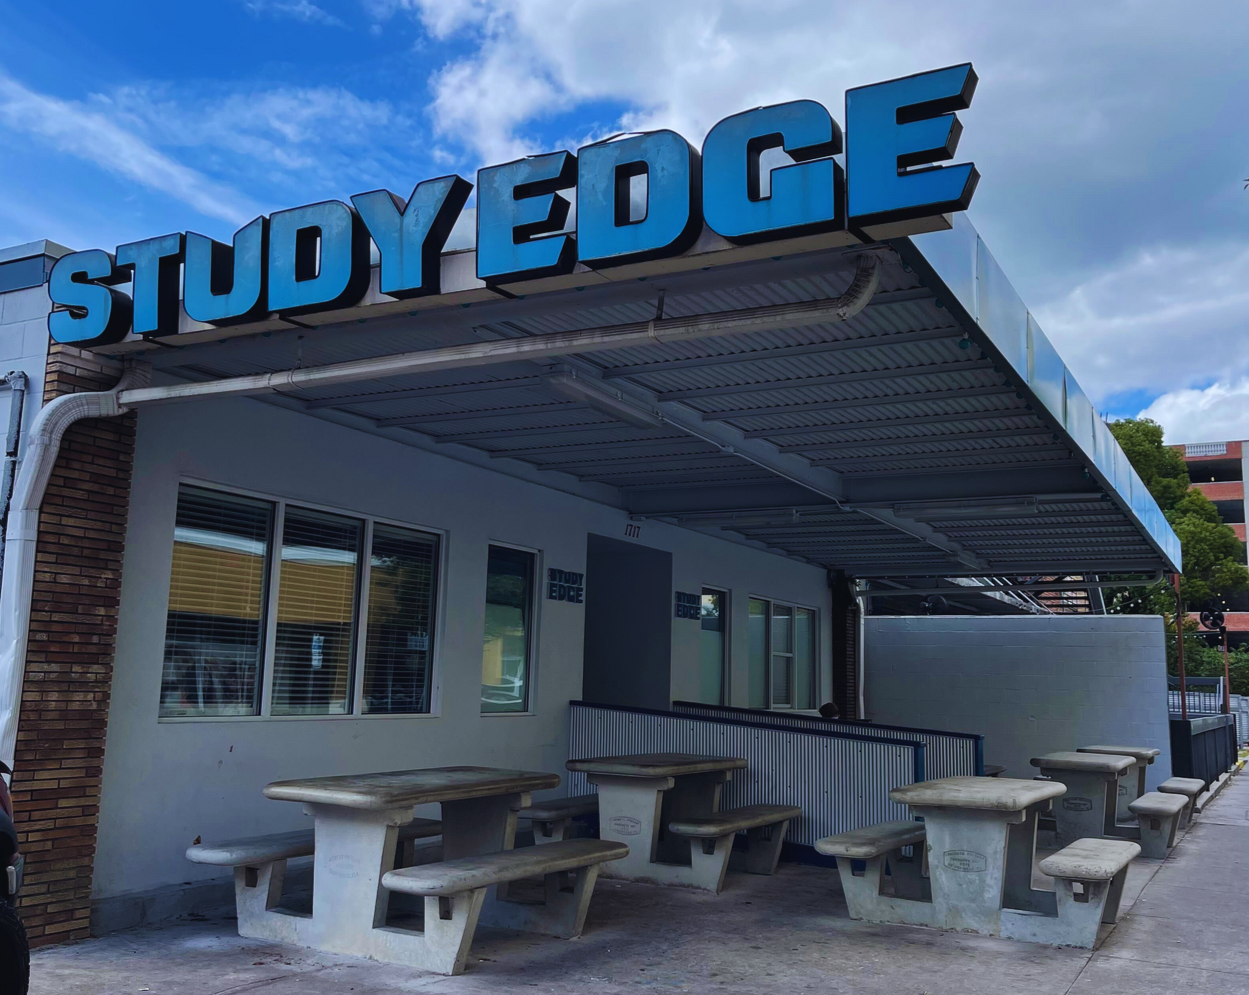 Study Edge Building